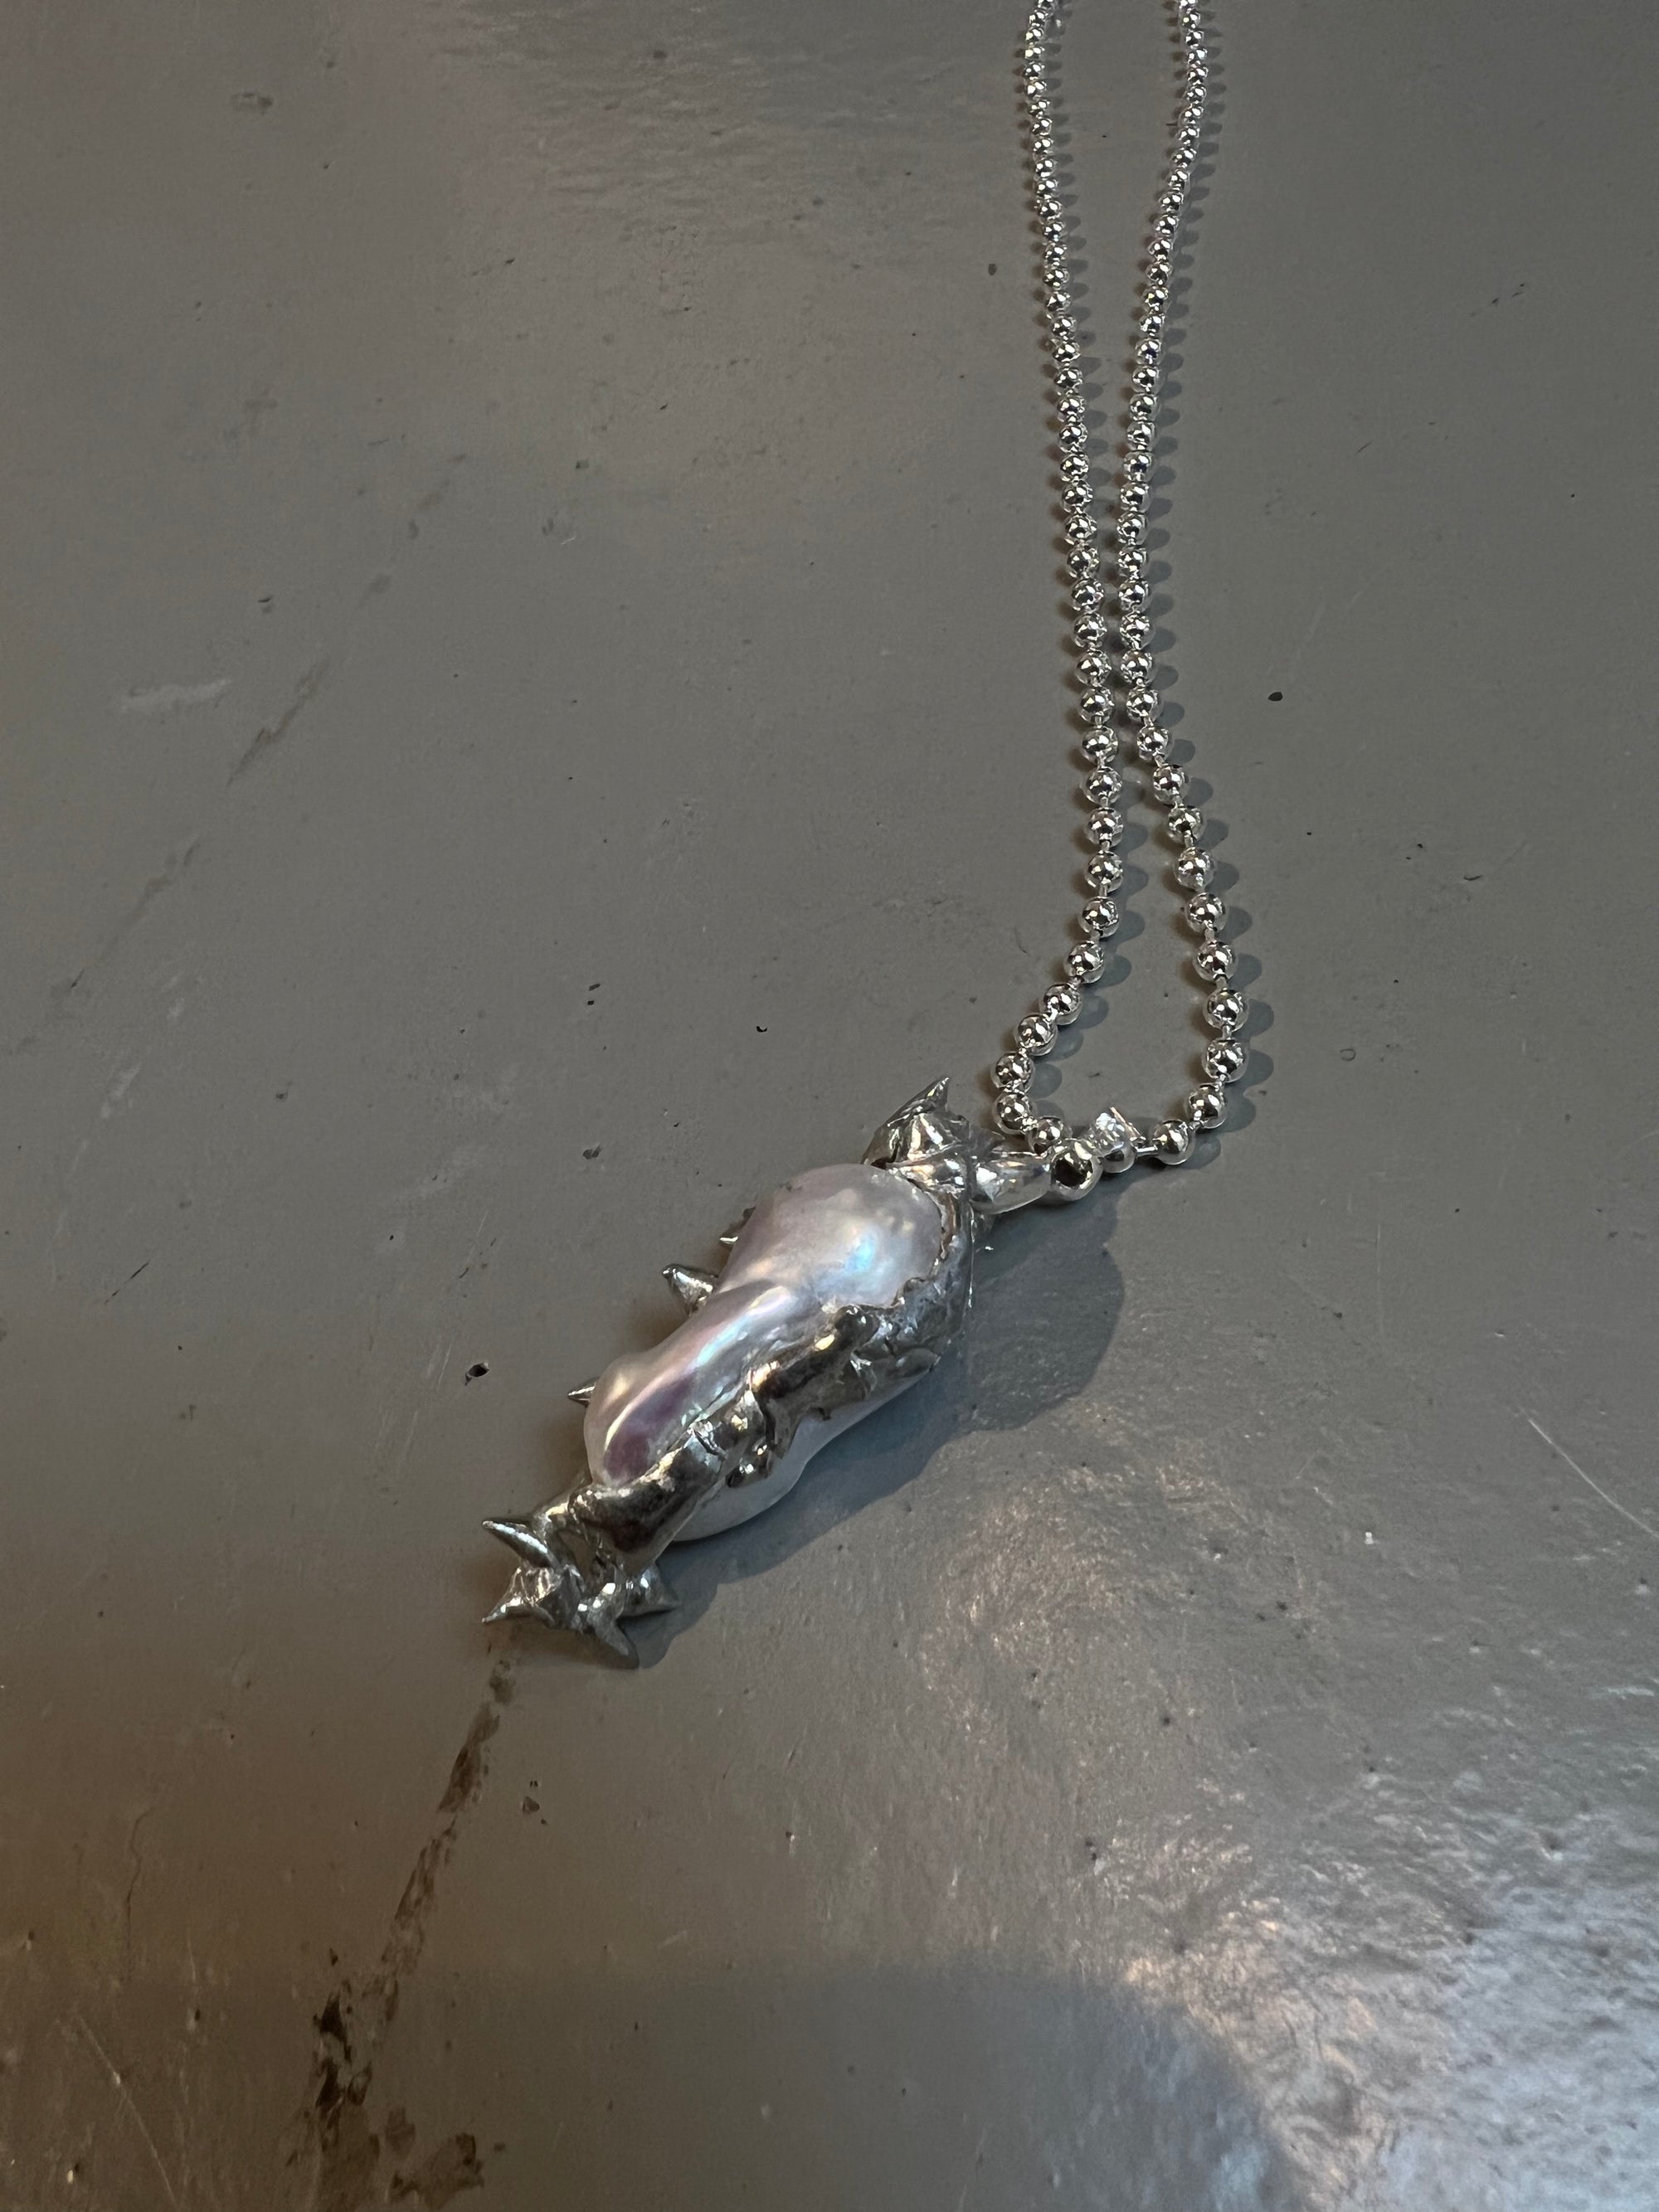 Produktbild von einer silbernen Perlenhalskette mit abstraktem Anhänger von Xullery vor einem grauen Hintergrund.